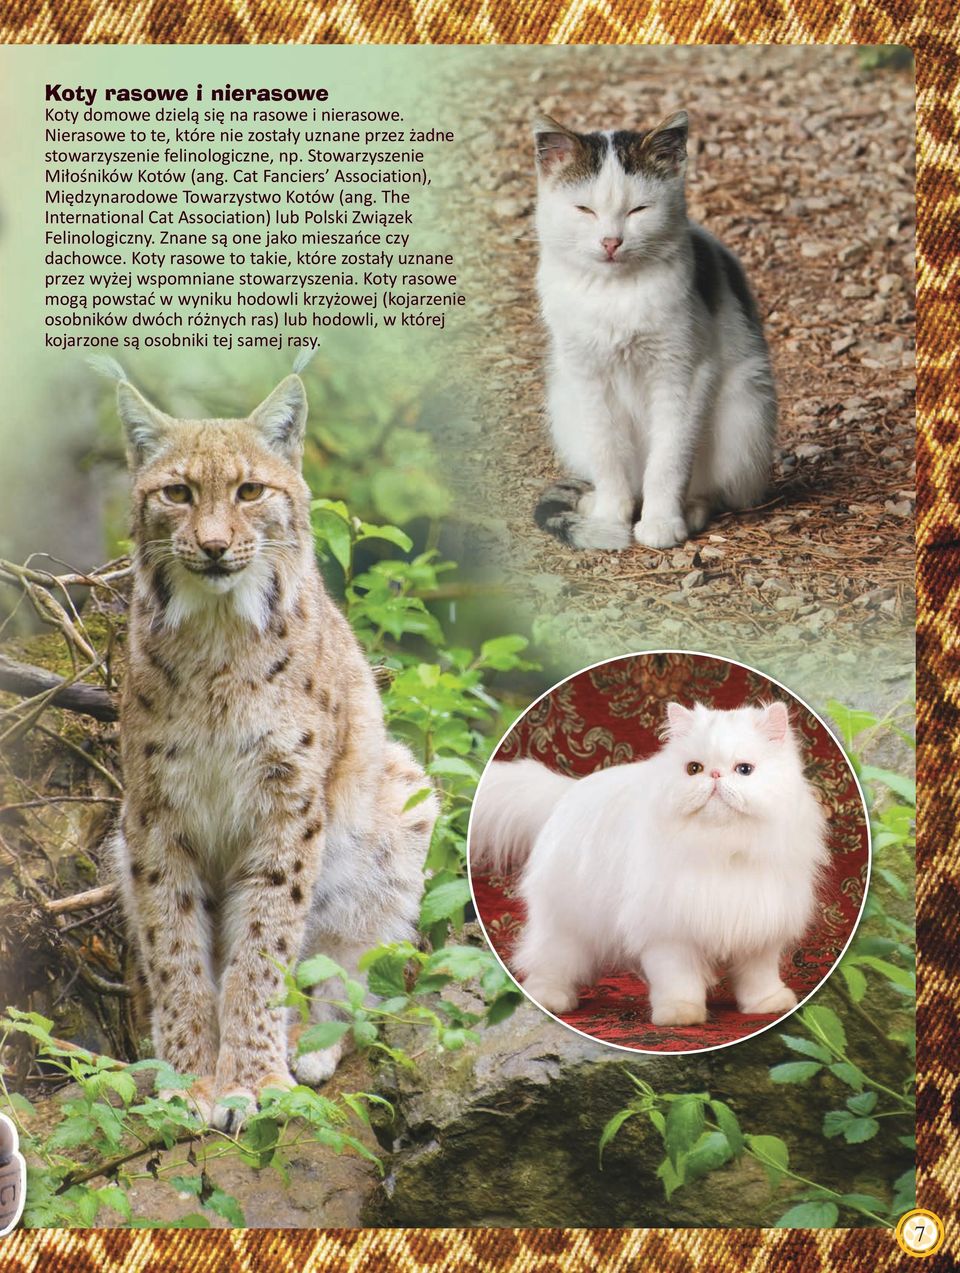 Cat Fanciers Association), Międzynarodowe Towarzystwo Kotów (ang. The International Cat Association) lub Polski Związek Felinologiczny.